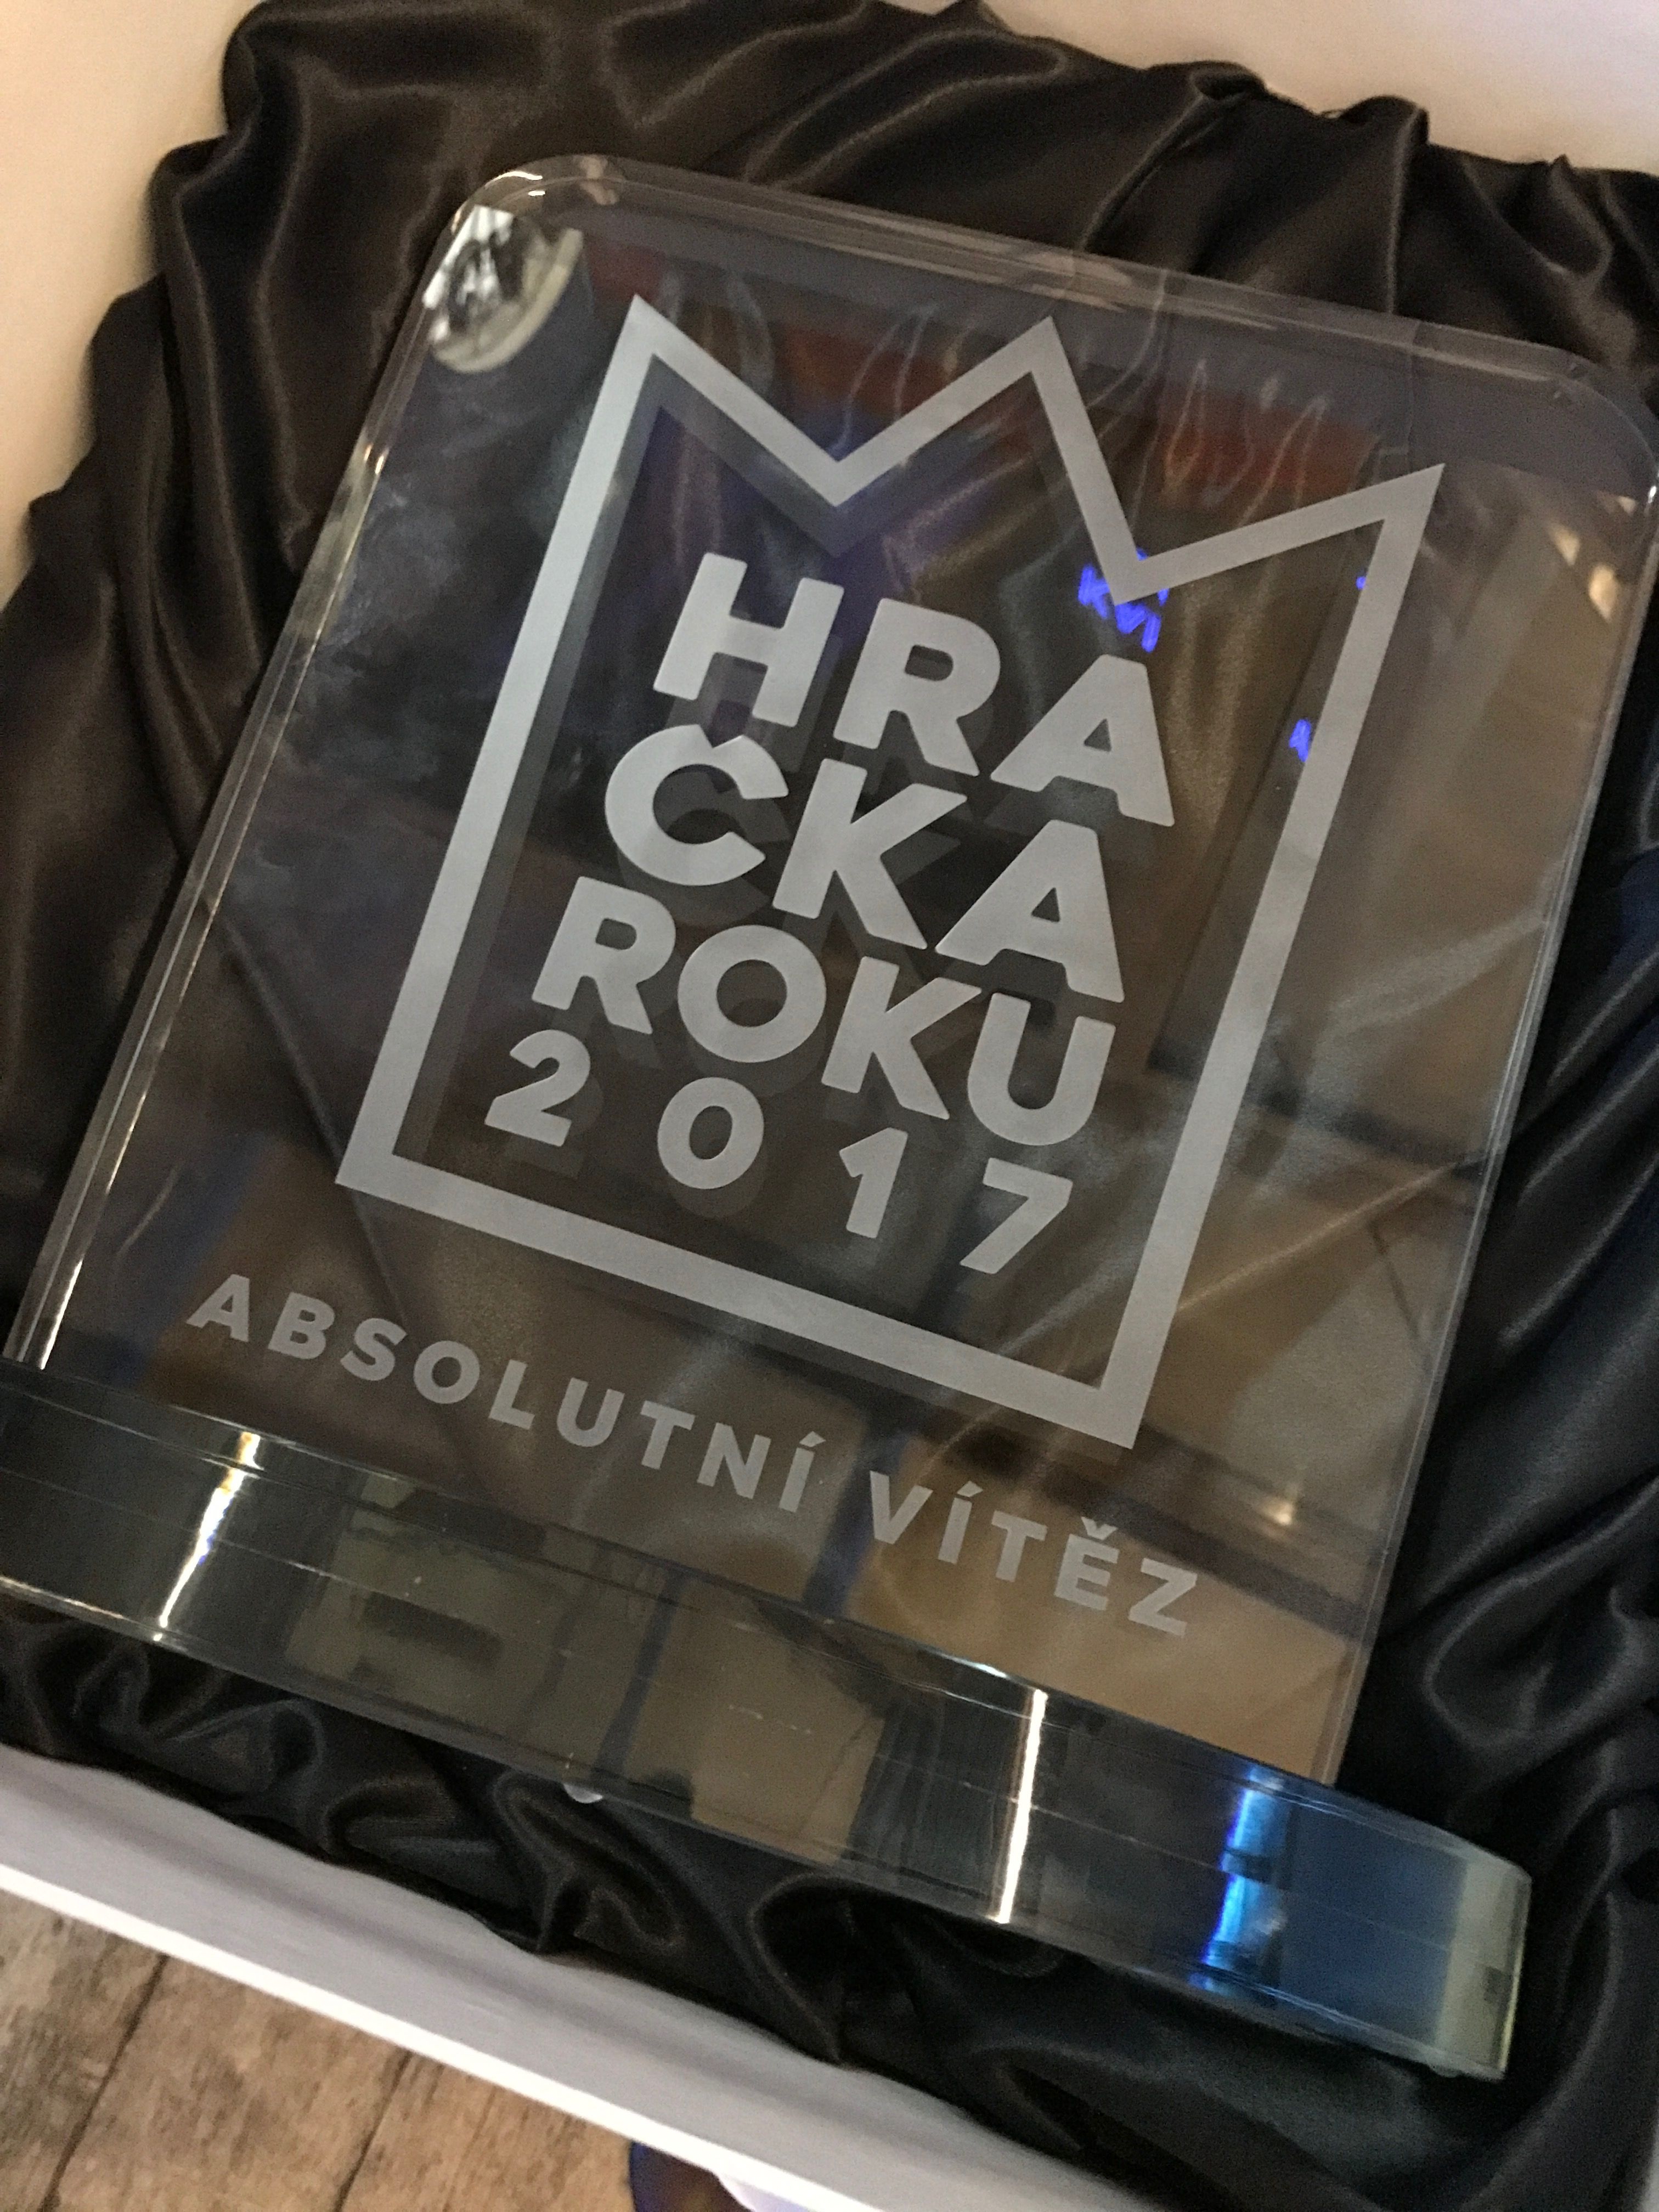 Interaktívna hračka z dielne Piqipi sa stala v súťaži Hračka roku 2017 absolútnym víťazom.